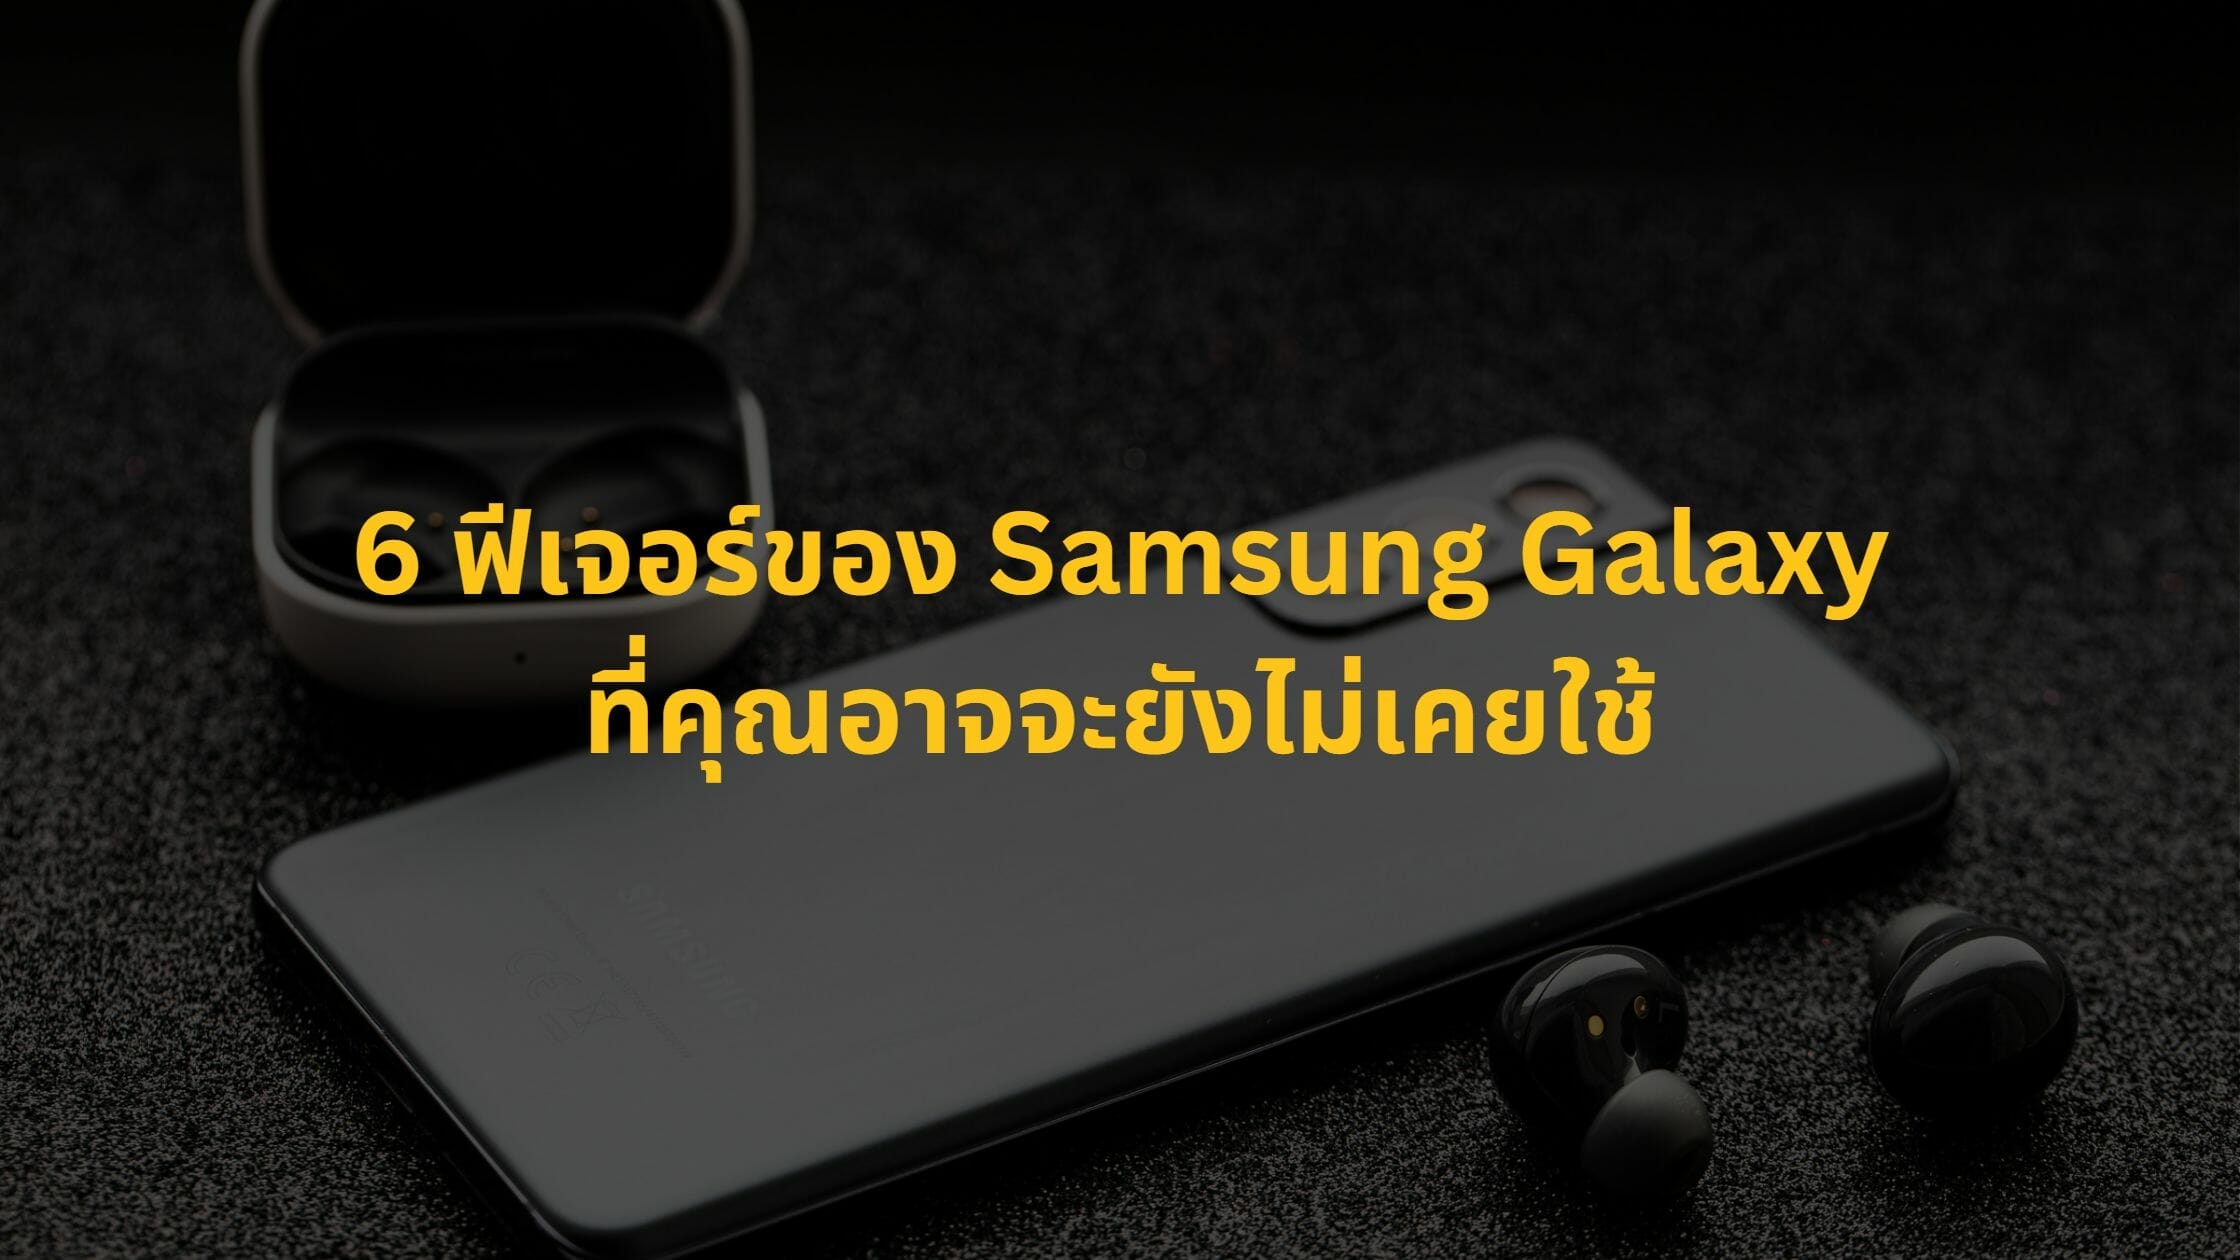 6 ฟีเจอร์มีประโยชน์ของ Samsung Galaxy ที่คุณอาจจะยังไม่เคยใช้